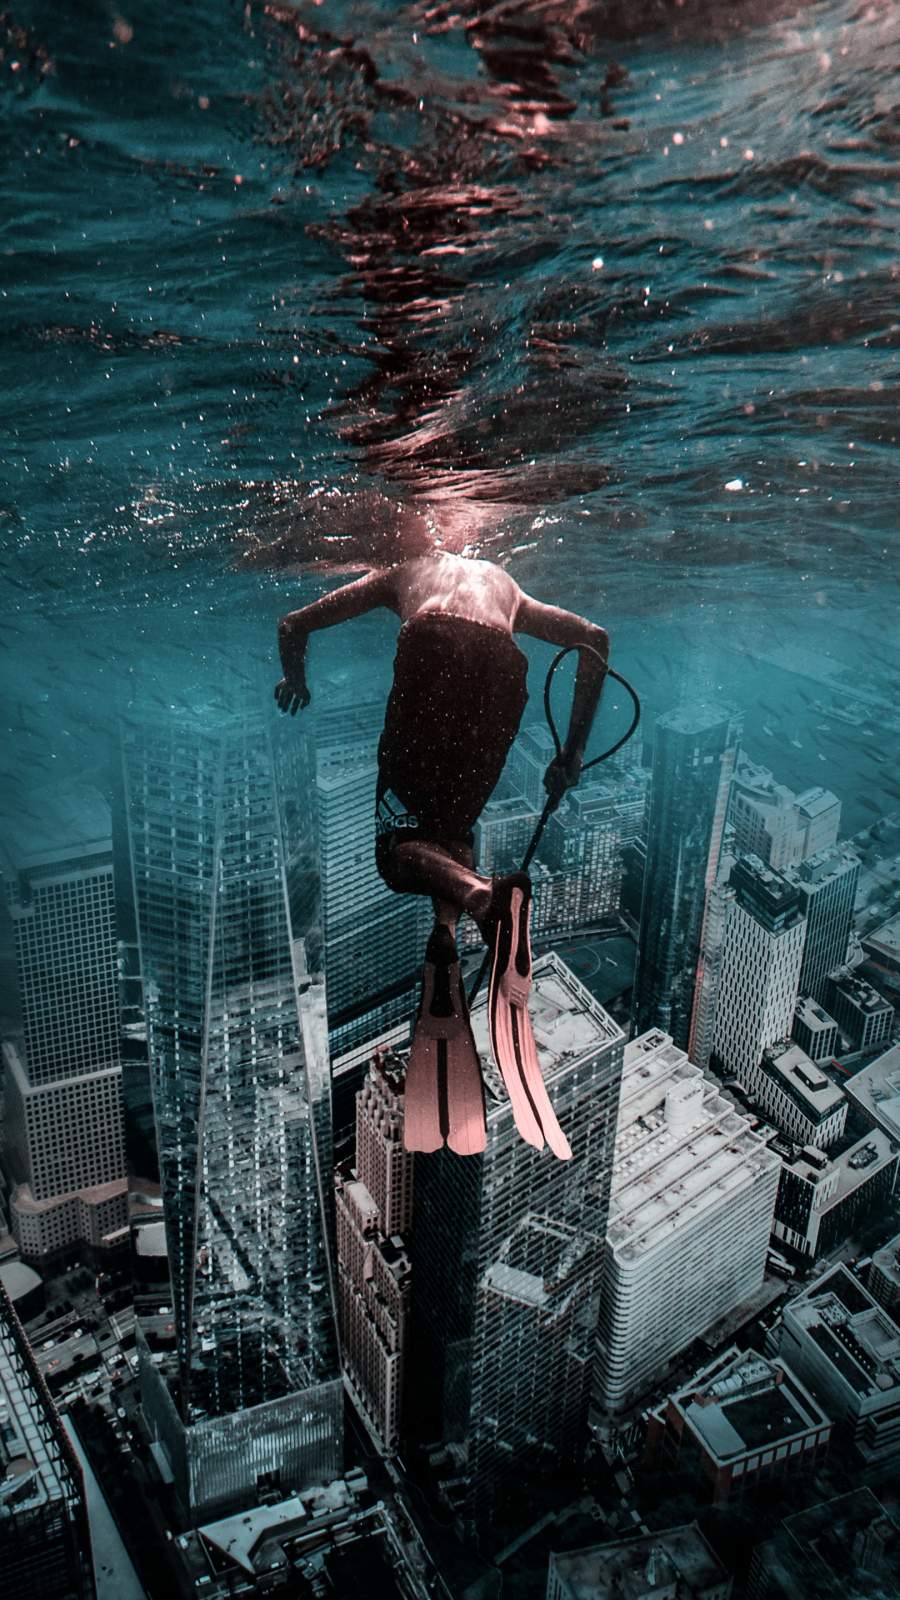 Underwater City IPhone Wallpaper Wallpaper, iPhone Wallpaper